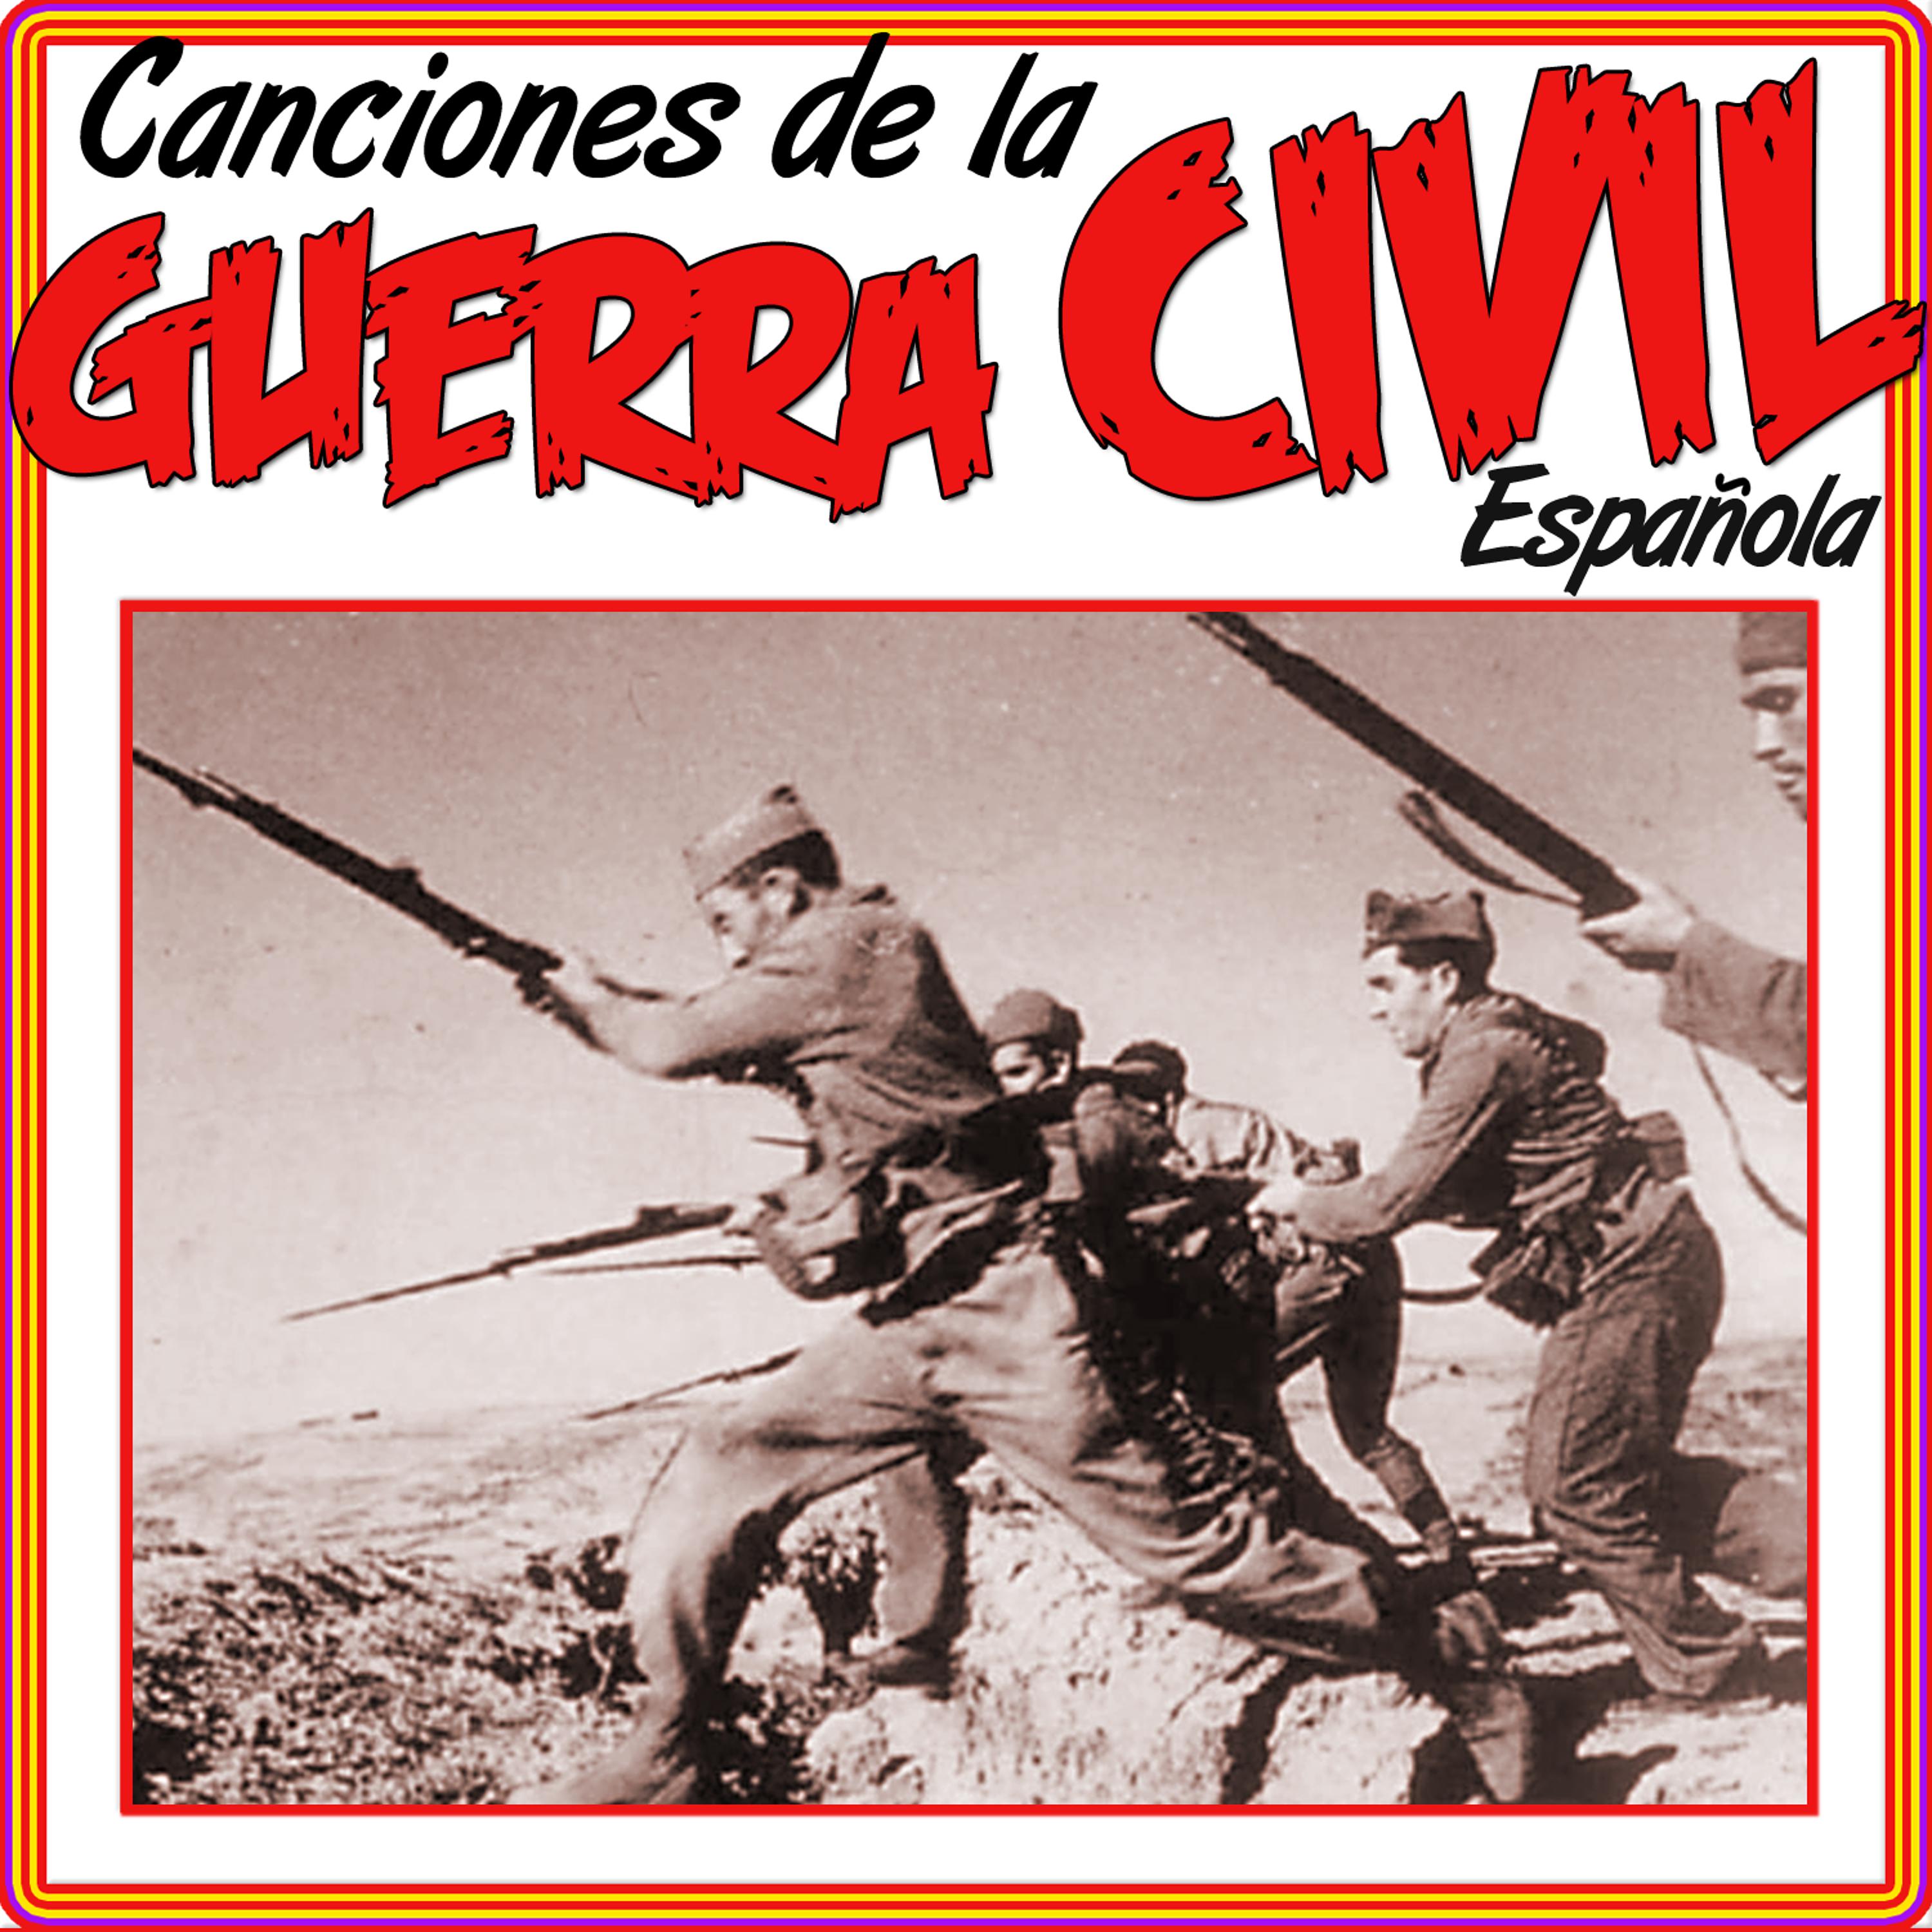 Постер альбома Canciones de la Guerra Civil Española